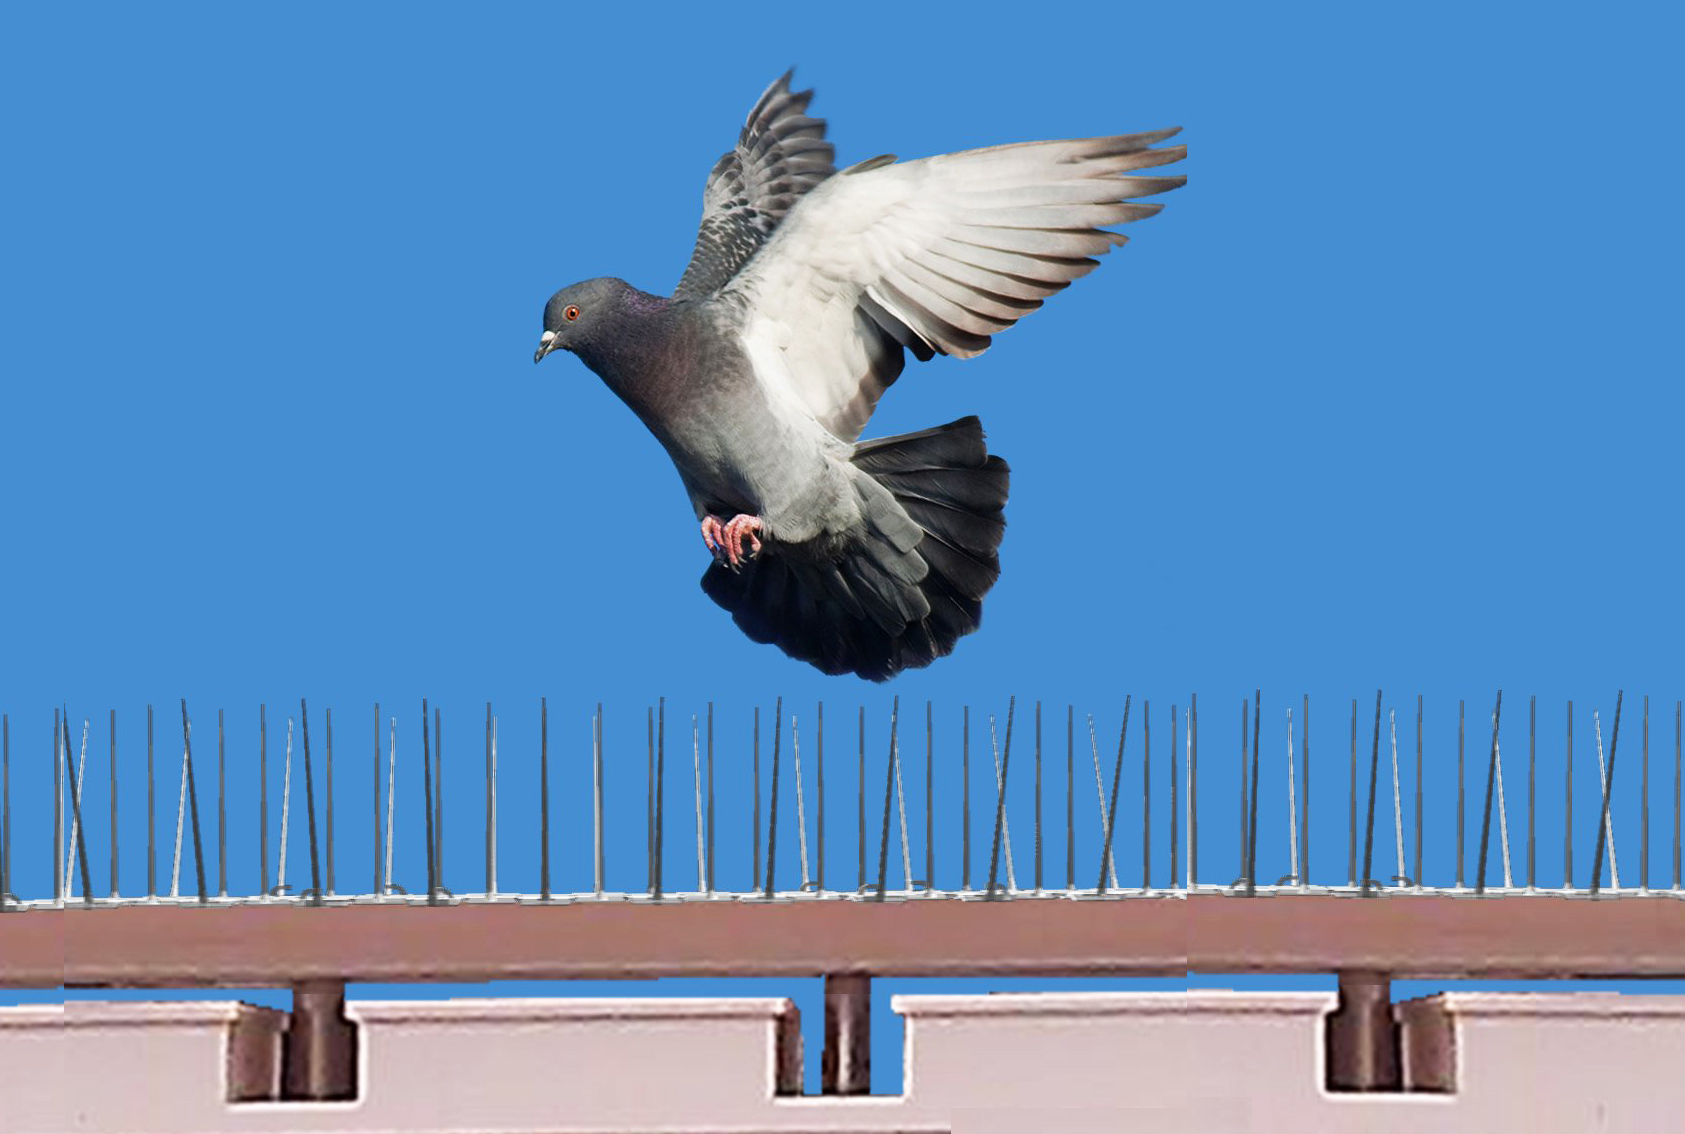 Societe de dépigeonnage anti pigeon casablanca